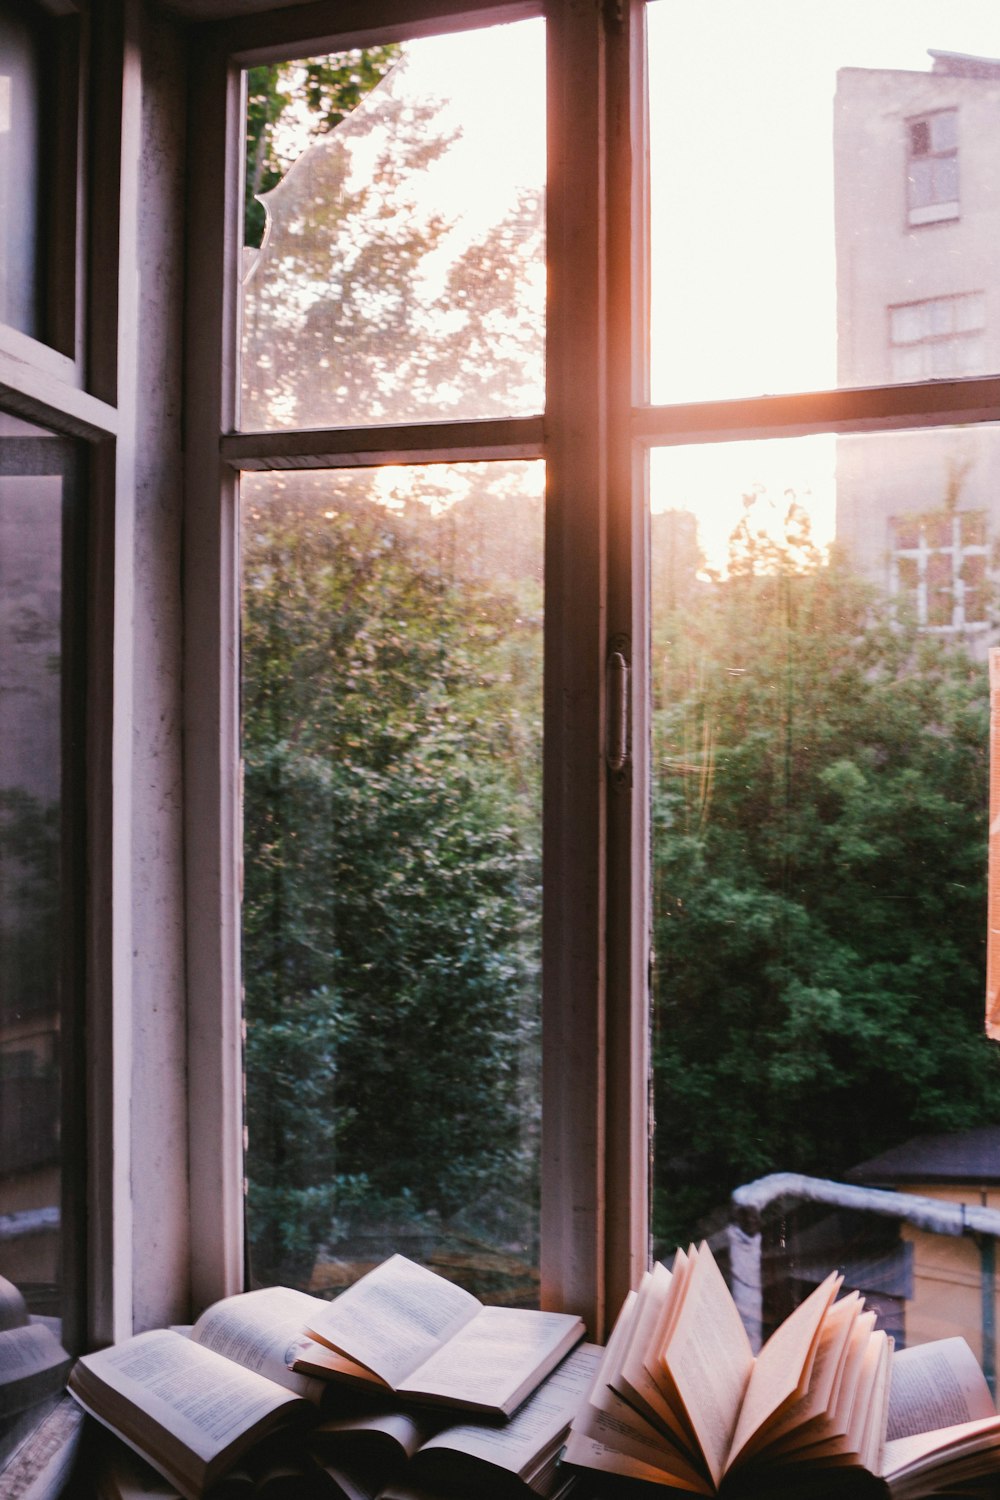 libri accanto alla finestra durante il tramonto